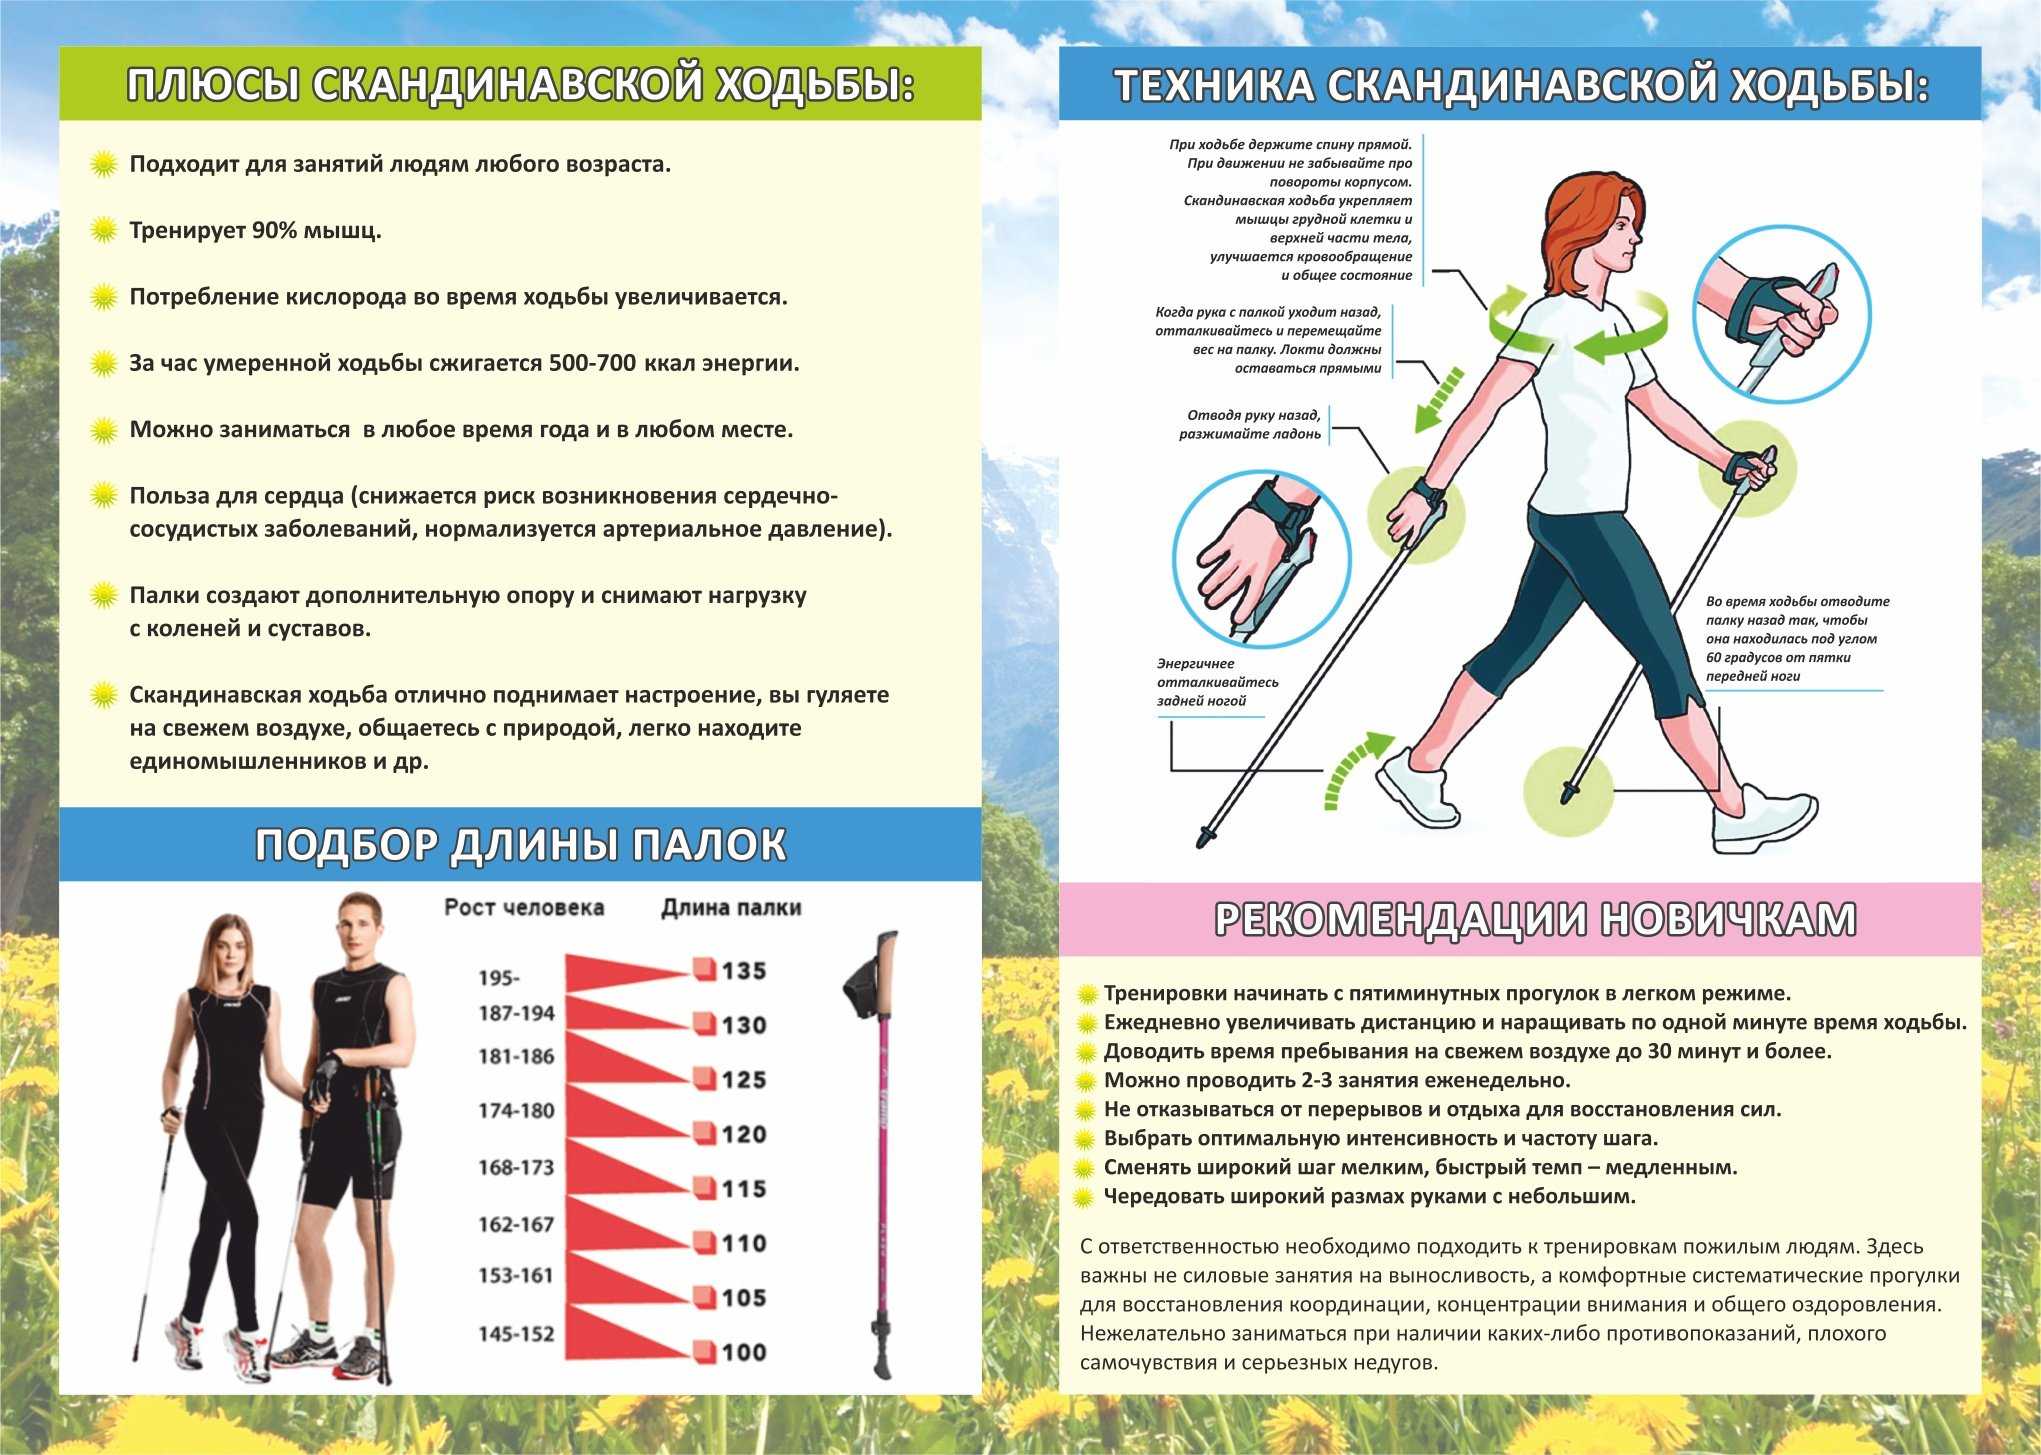 Ходьба или бег - что выбрать для похудения и укрепления мышц